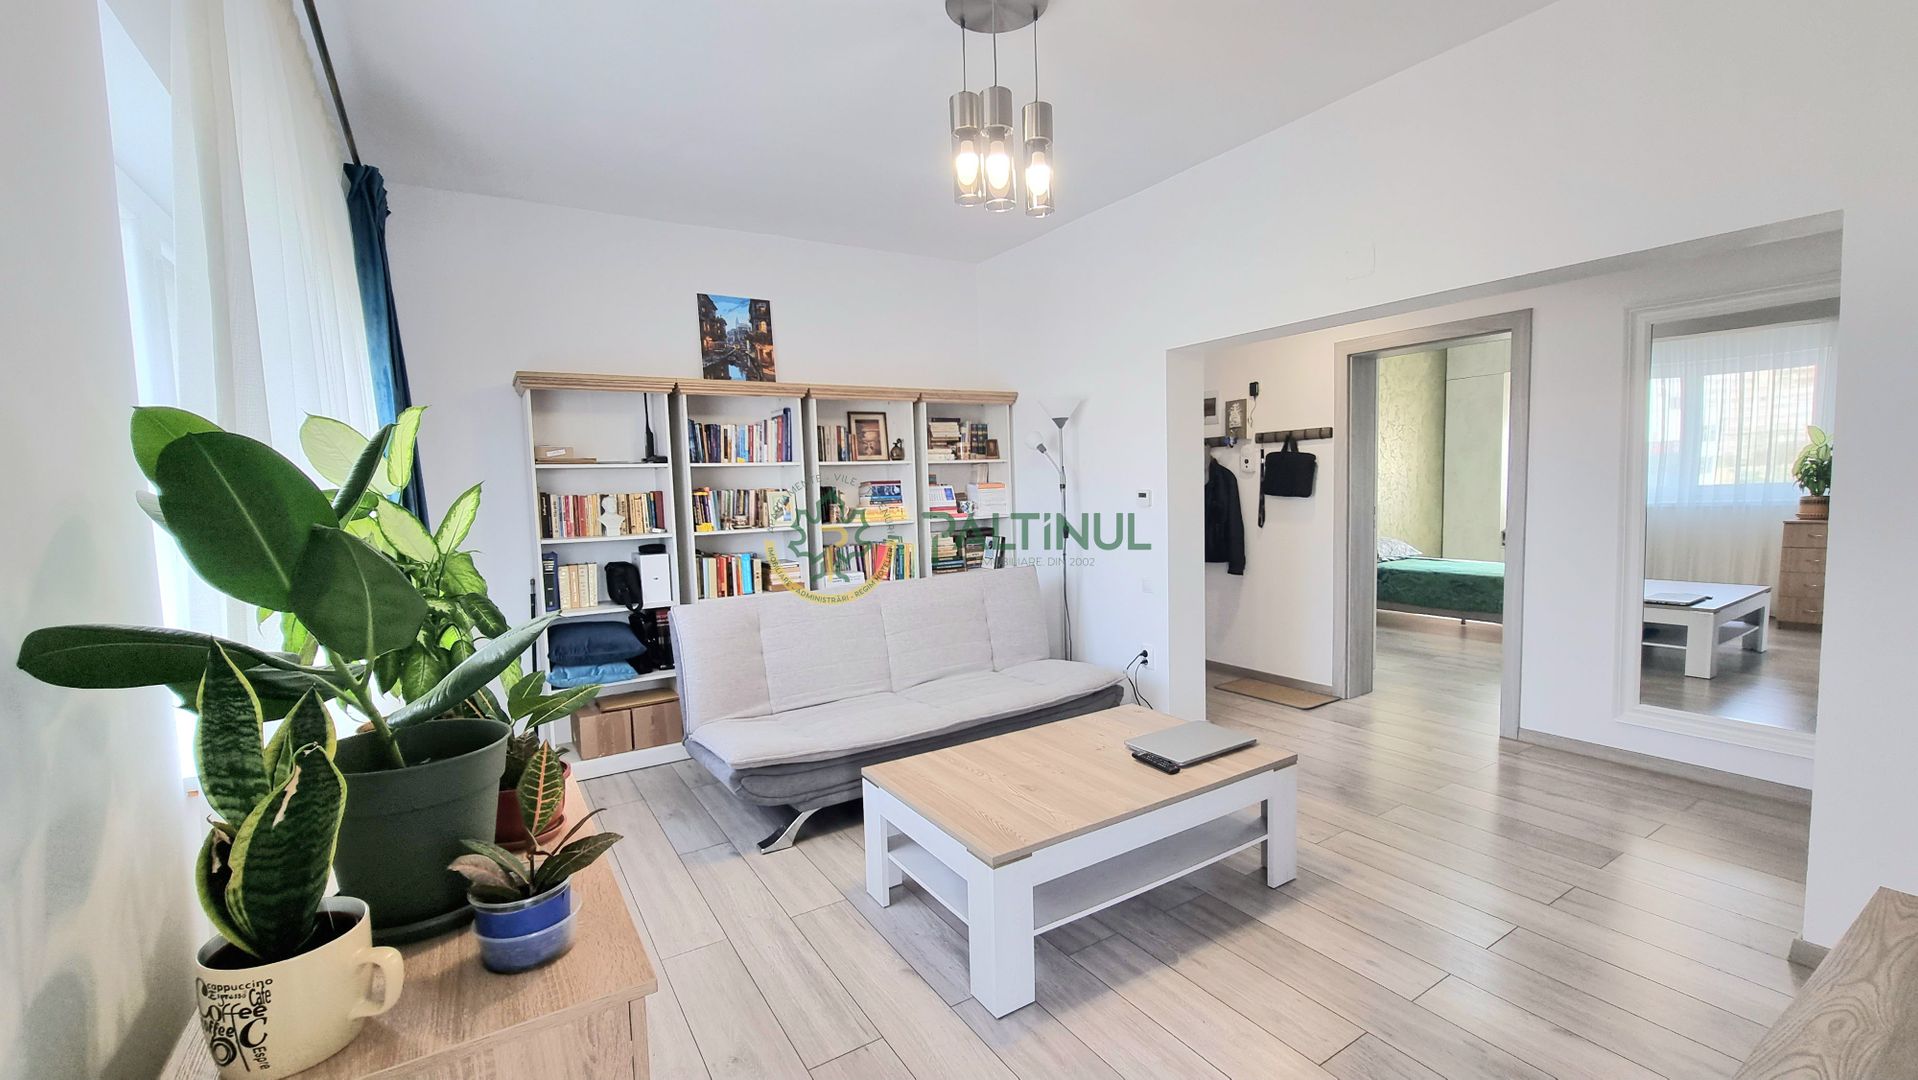 Apartament Decomandat, Et. 2, 3 Camere -Confort si Modernitate